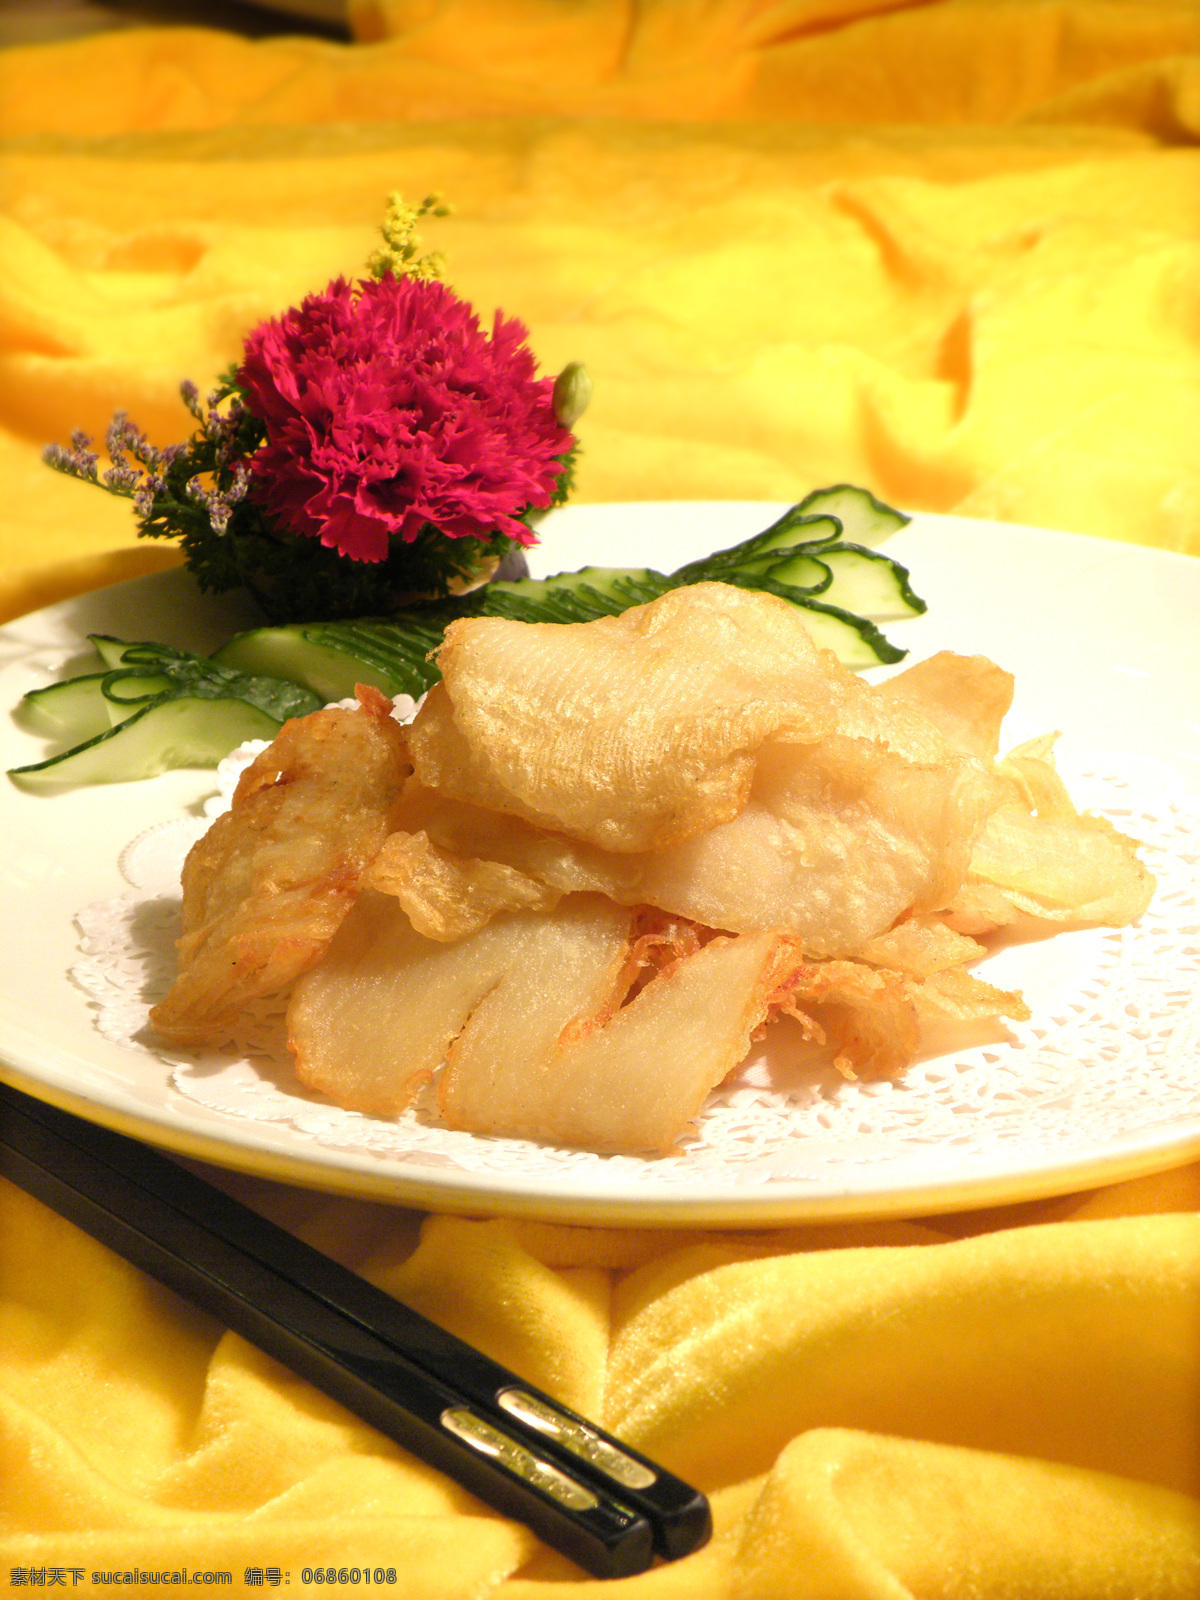 椒盐鱼翅卷 中餐 菜品 高清 传统美食 餐饮美食